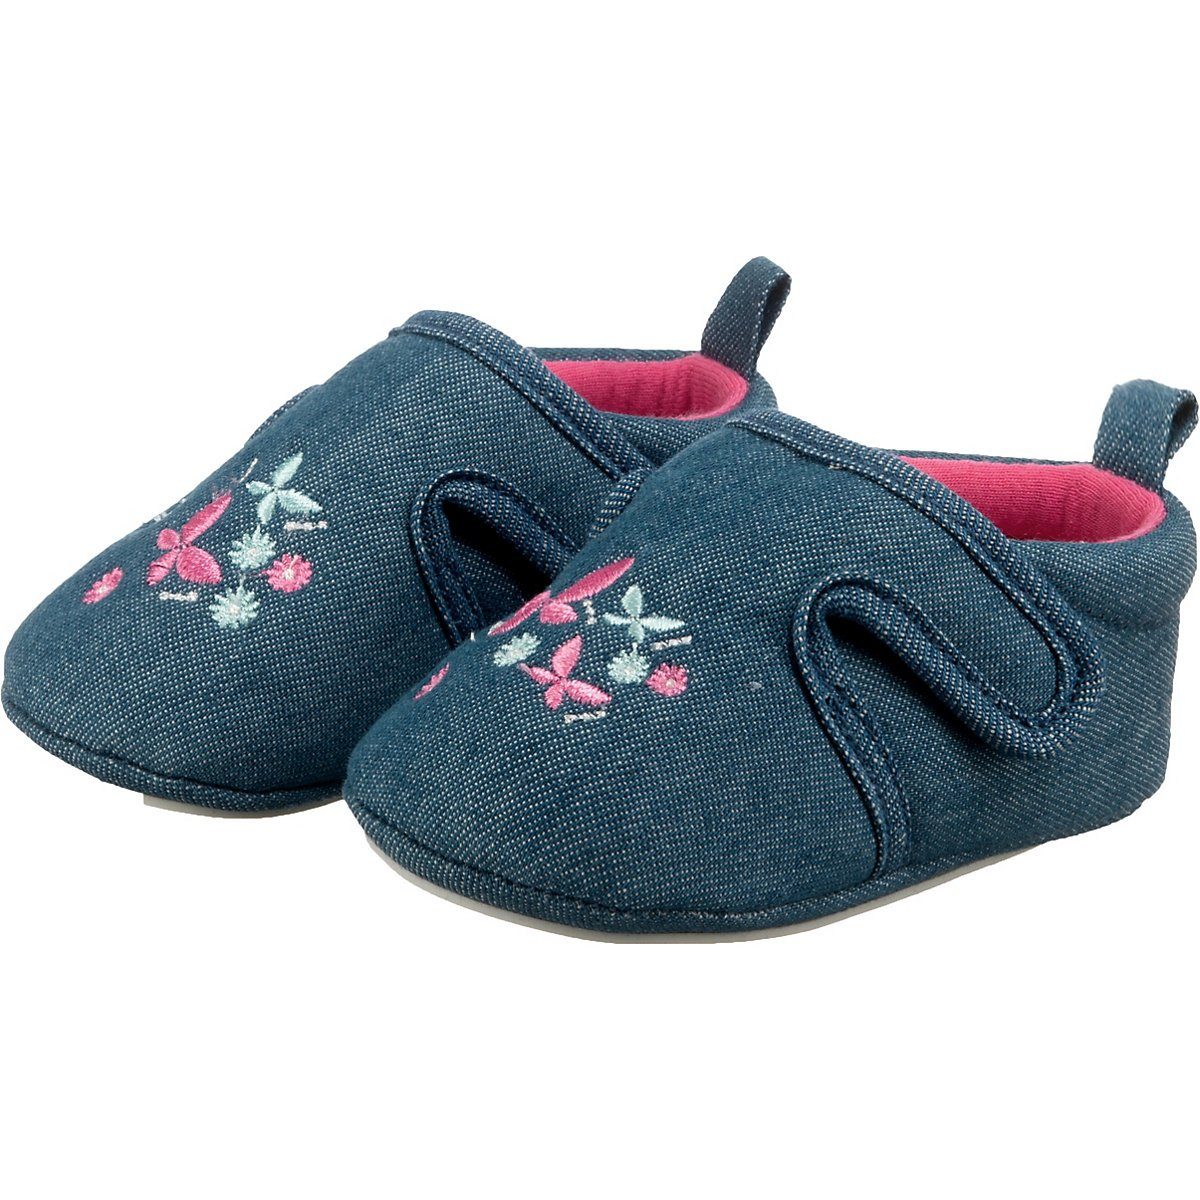 Schuhe Babyschuhe Mädchen Sterntaler® Baby Krabbelschuhe für Mädchen Schnürschuh